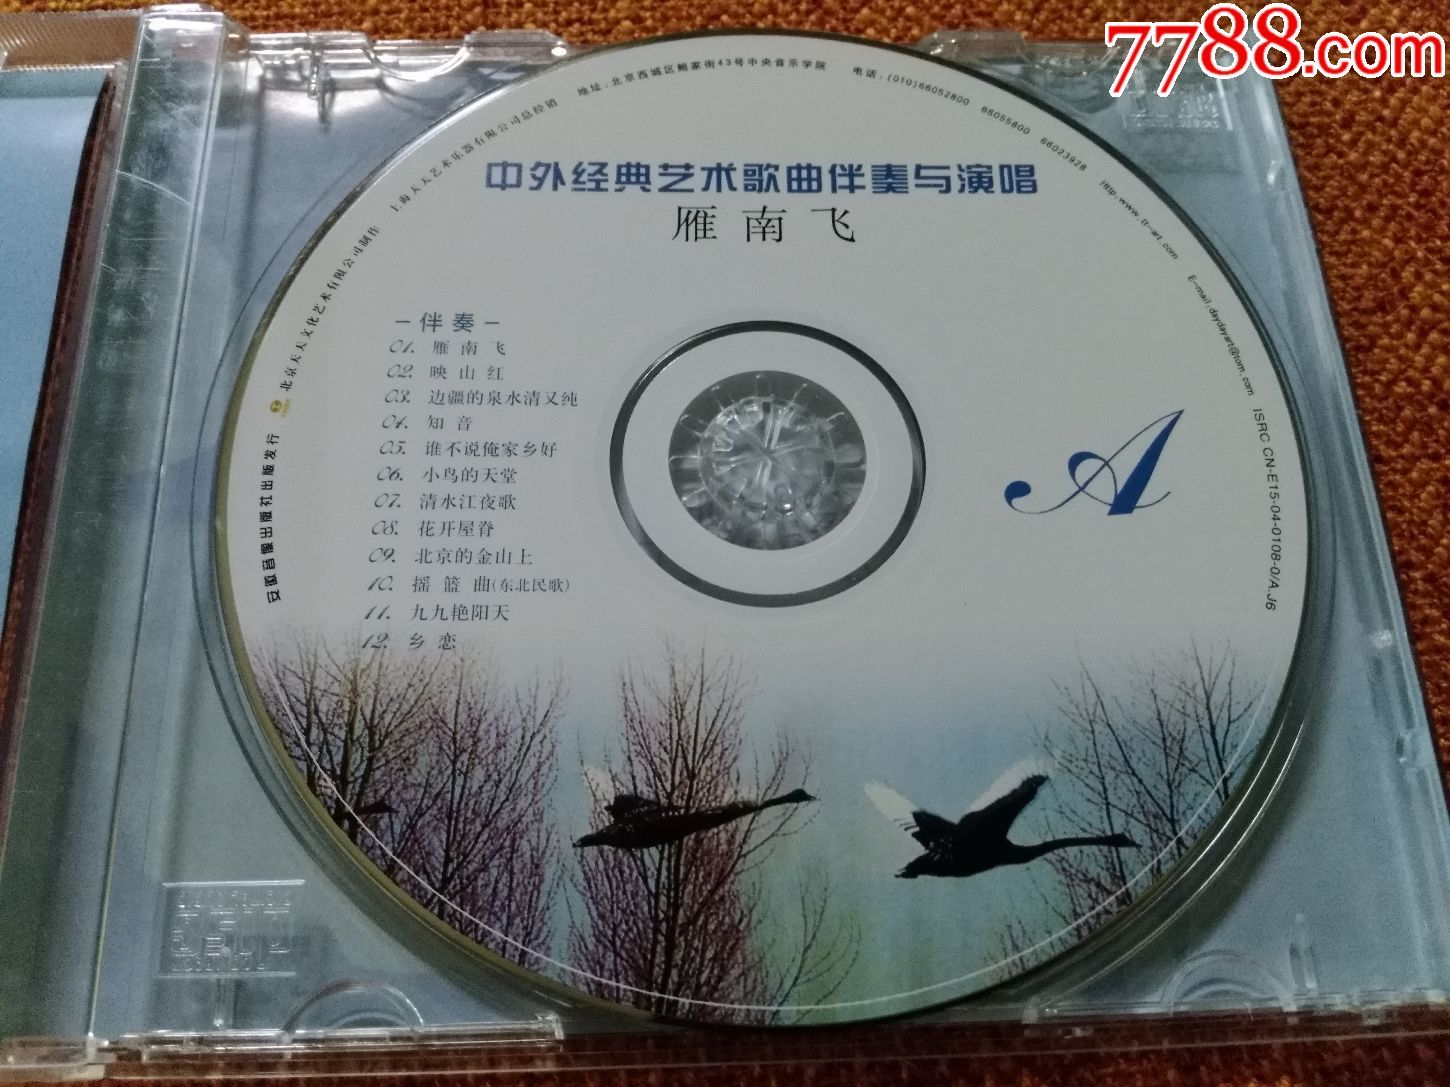 中外经典艺术歌曲伴奏与演唱-雁南飞2CD